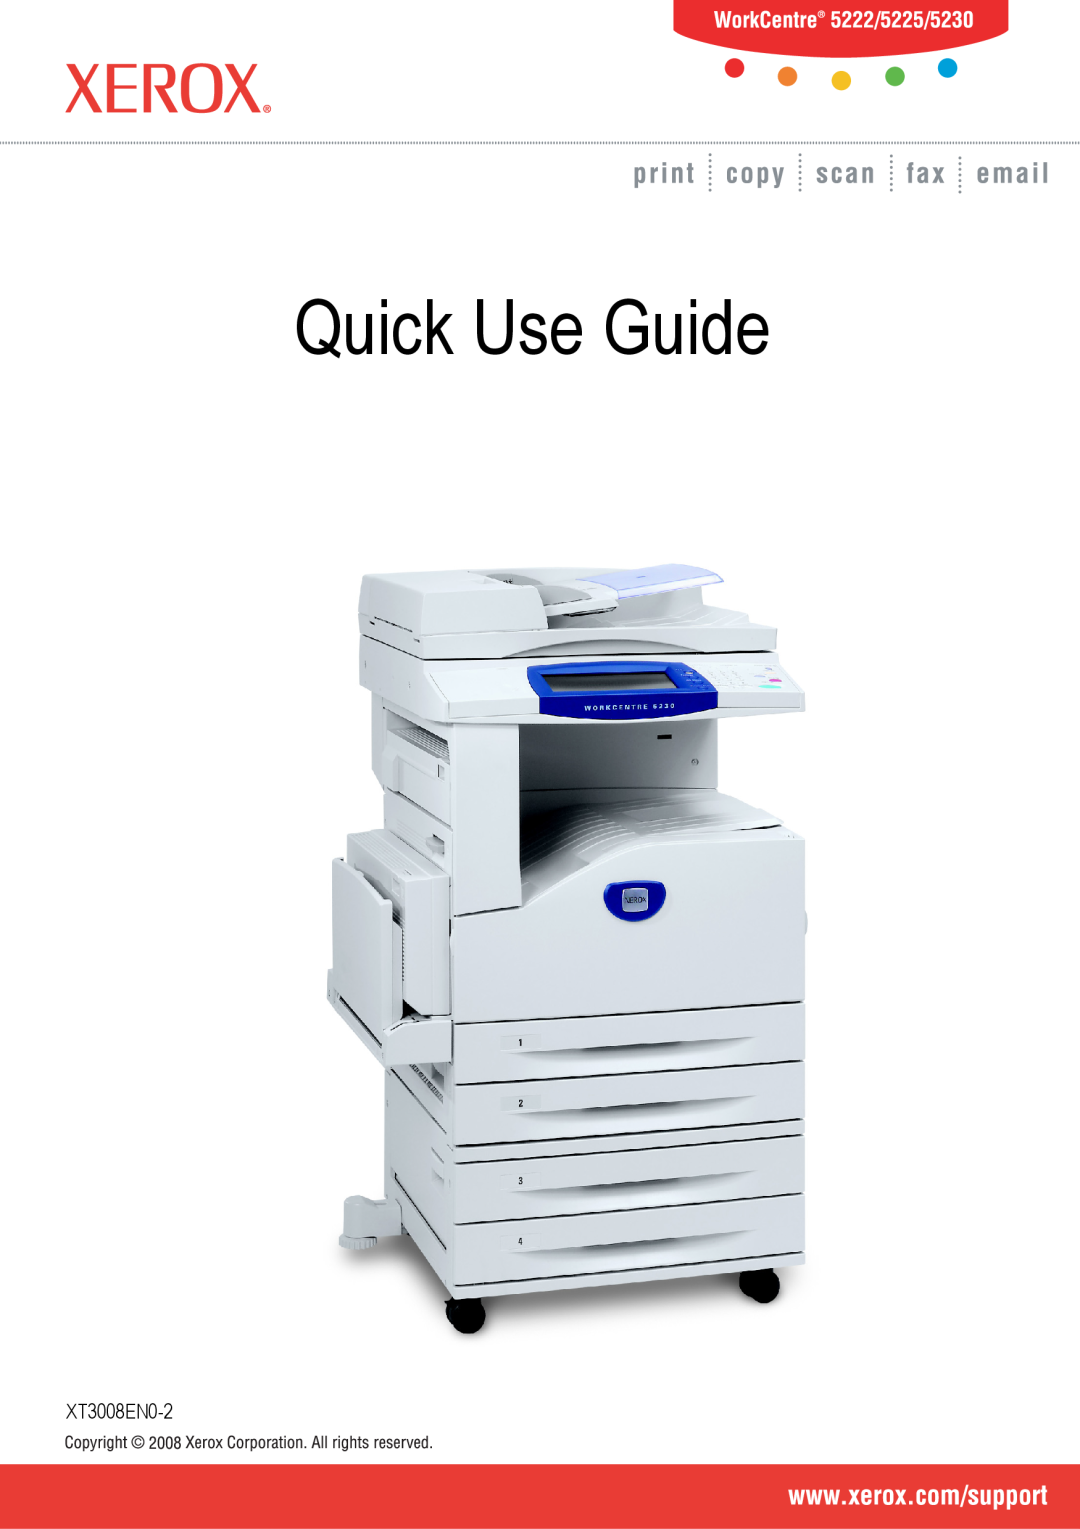 Xerox manual User Guide, Quick Use Guide, XT3008EN0-2 ME3612E4-1 